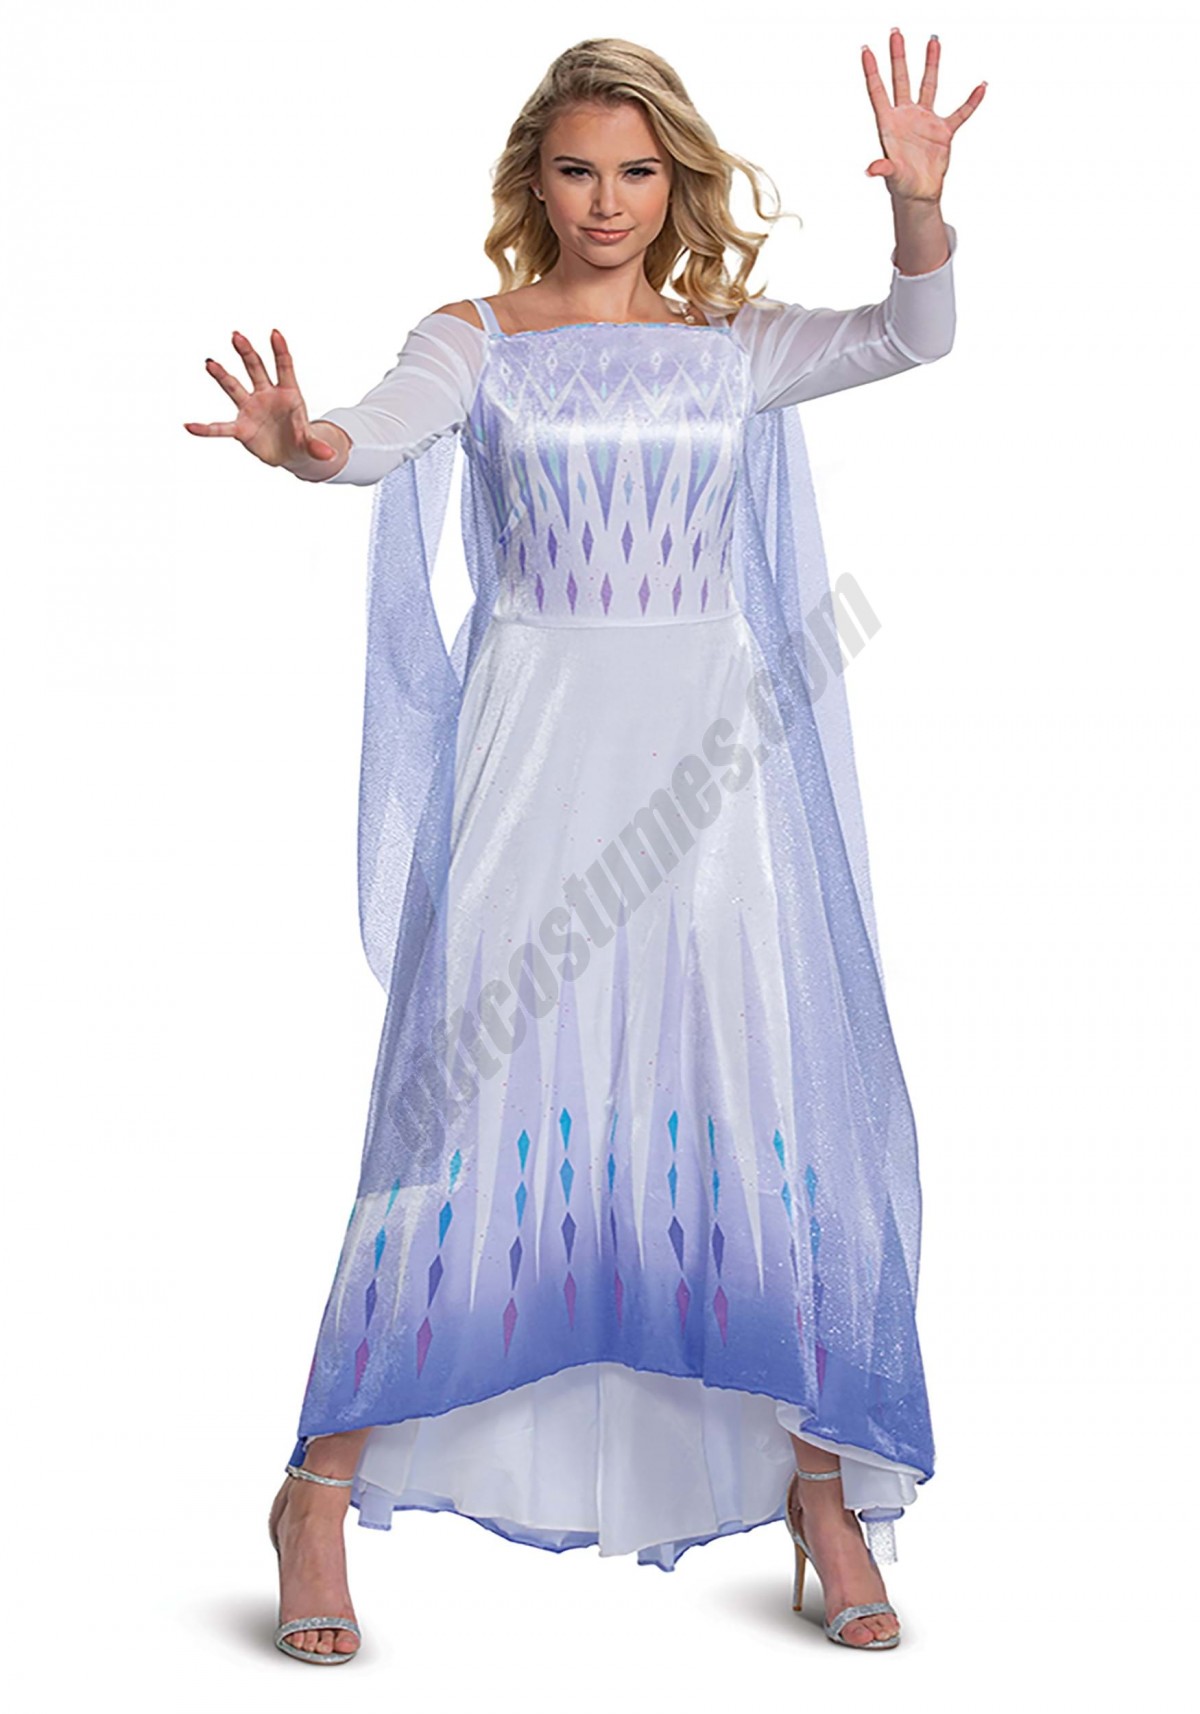 Frozen Snow Queen Elsa Deluxe Women's Costume Promotions - -0